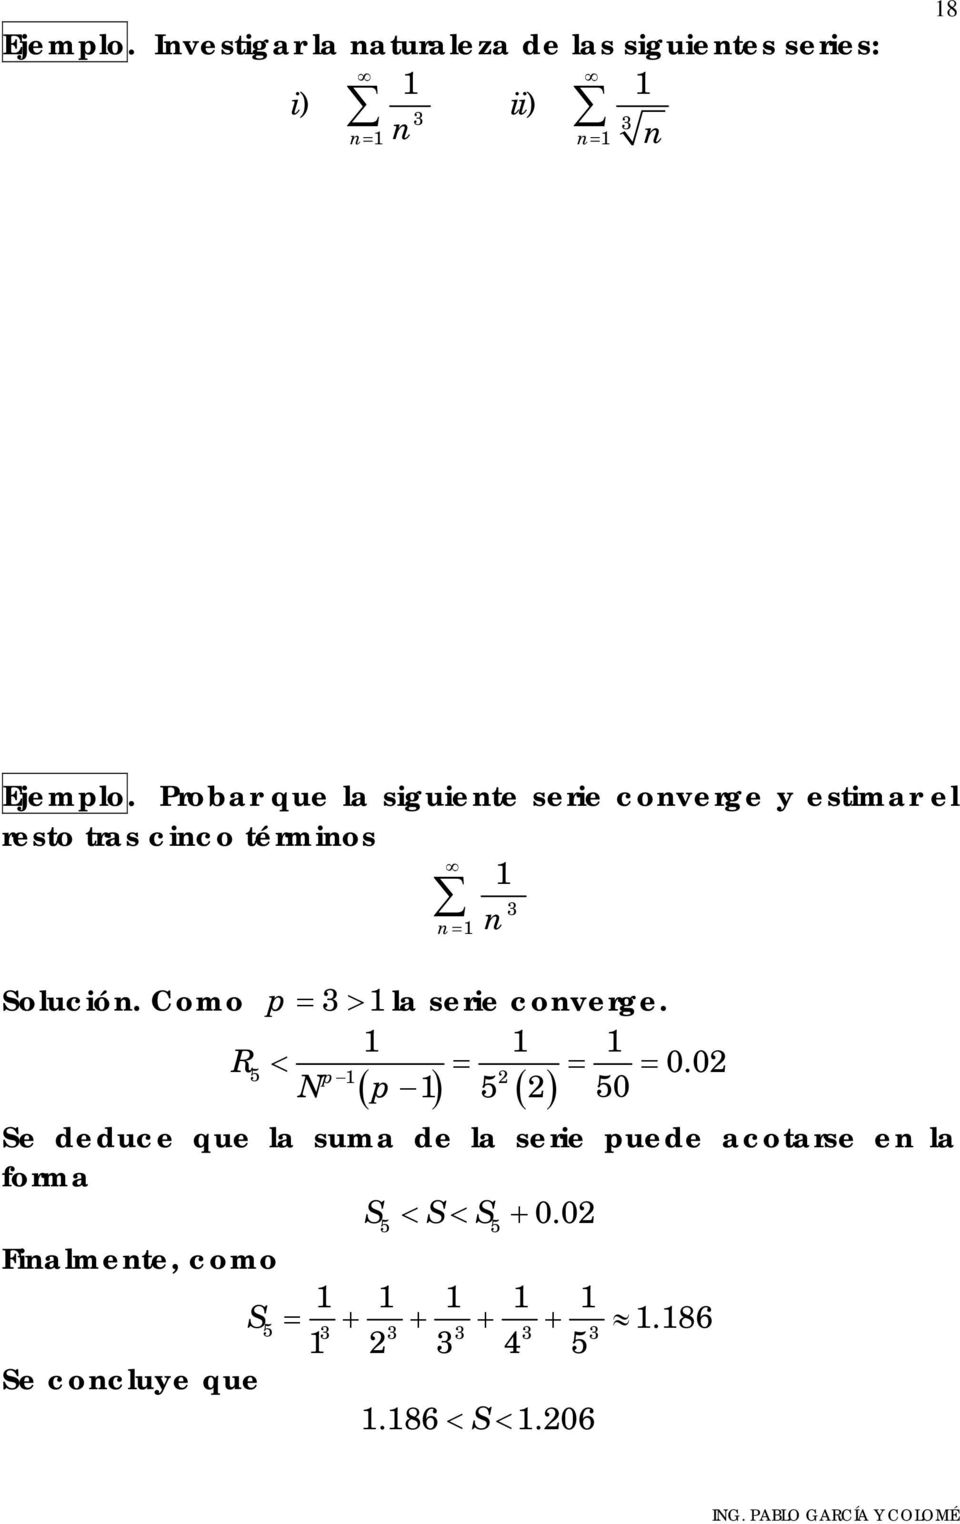 Como p = 3> la serie coverge. R < = = = 0.